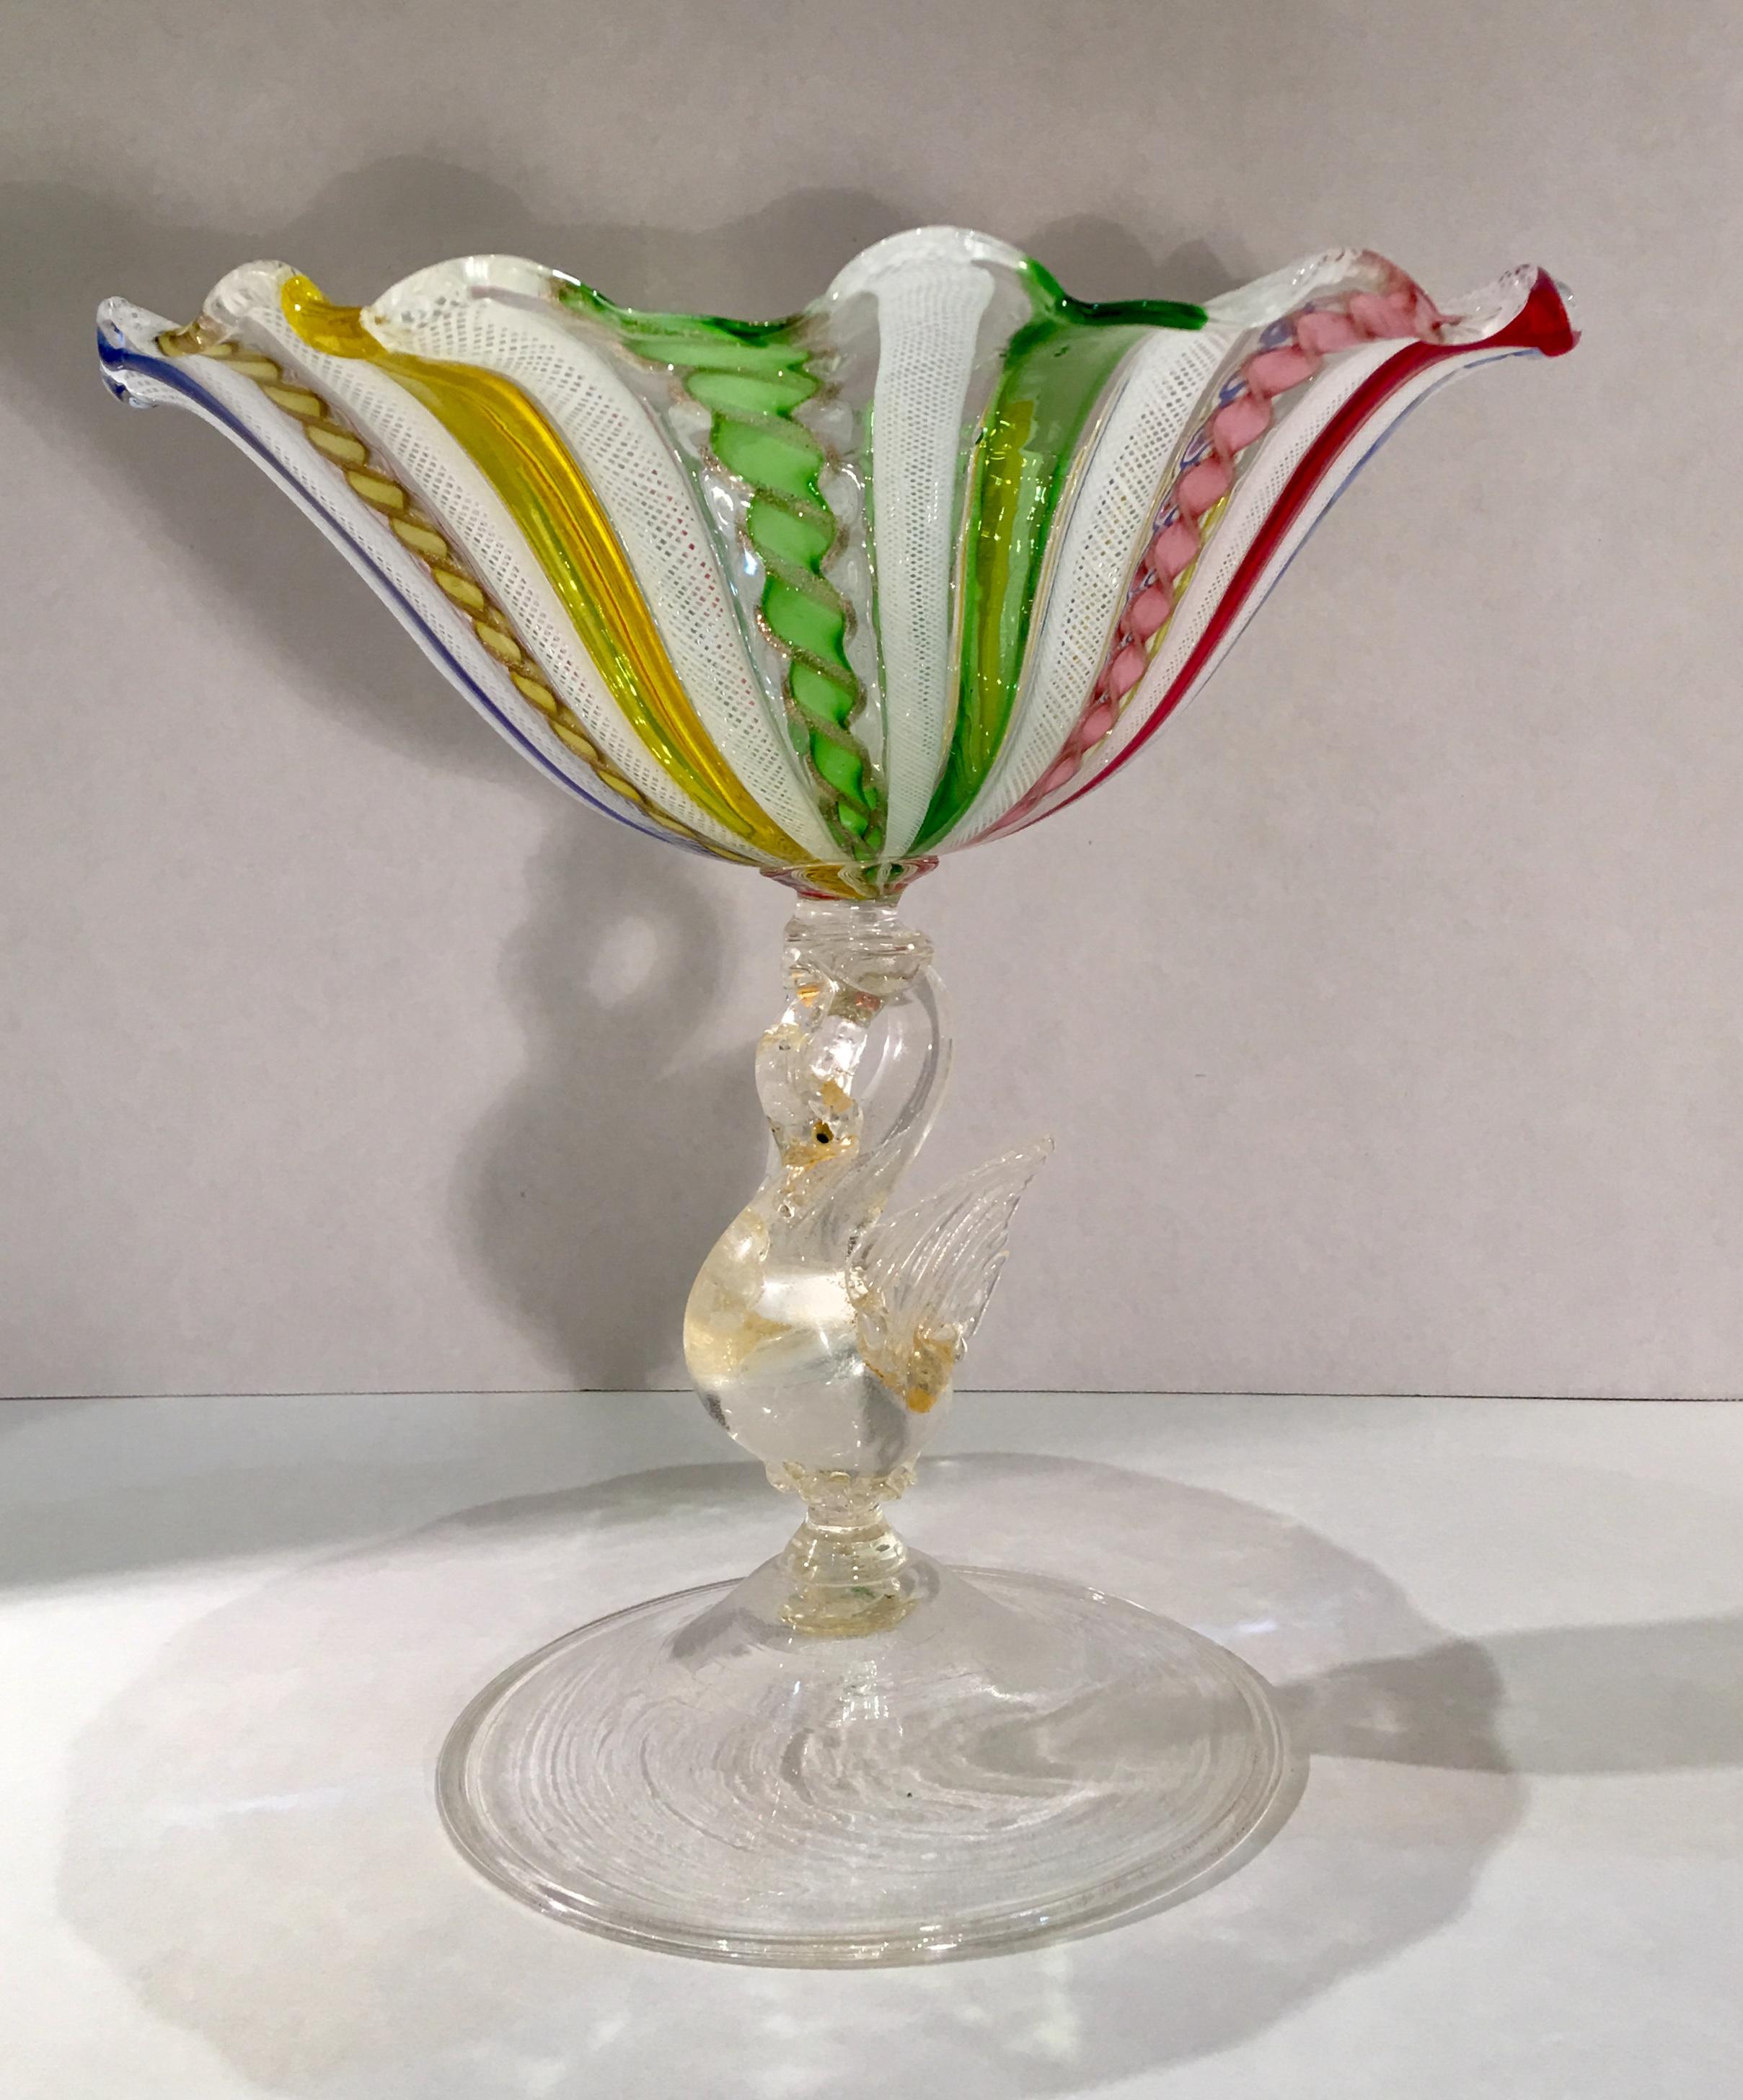 Italian Antique Venetian Colorful Latticino Murano Art Glass Compote Dish with Swan Stem